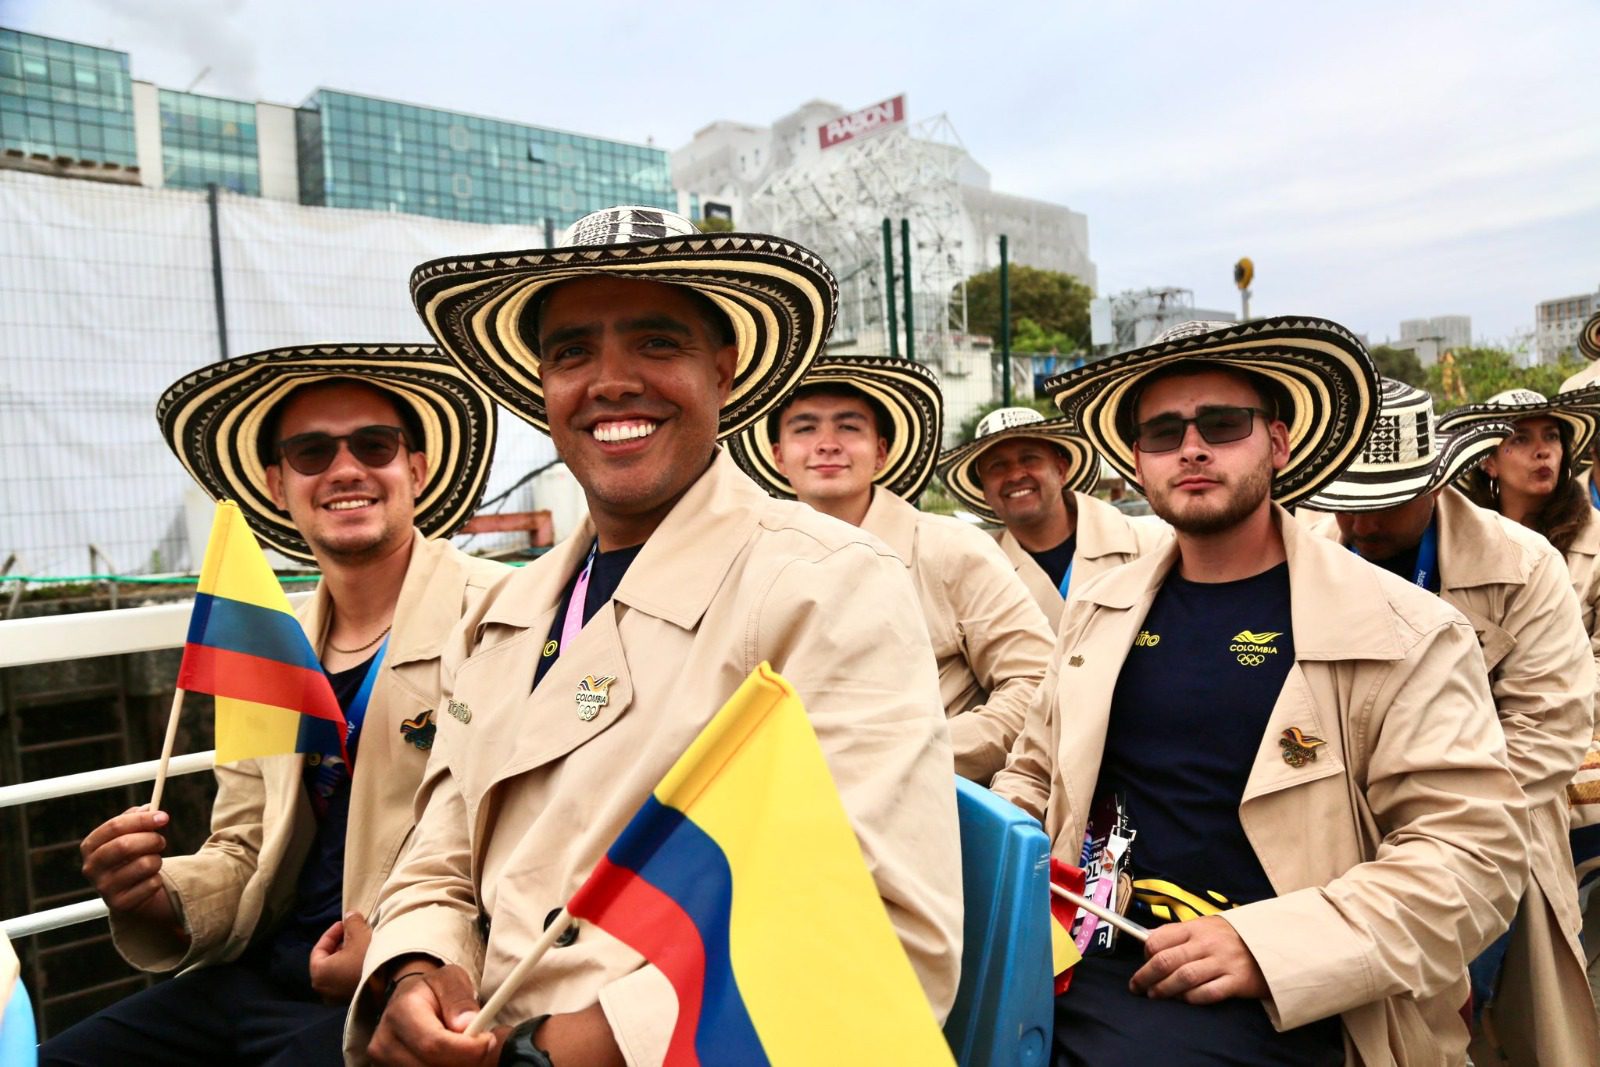 ¡Amarillo, azul y rojo en París! Con sombrero vueltiao, Colombia desfiló en los JJ.OO